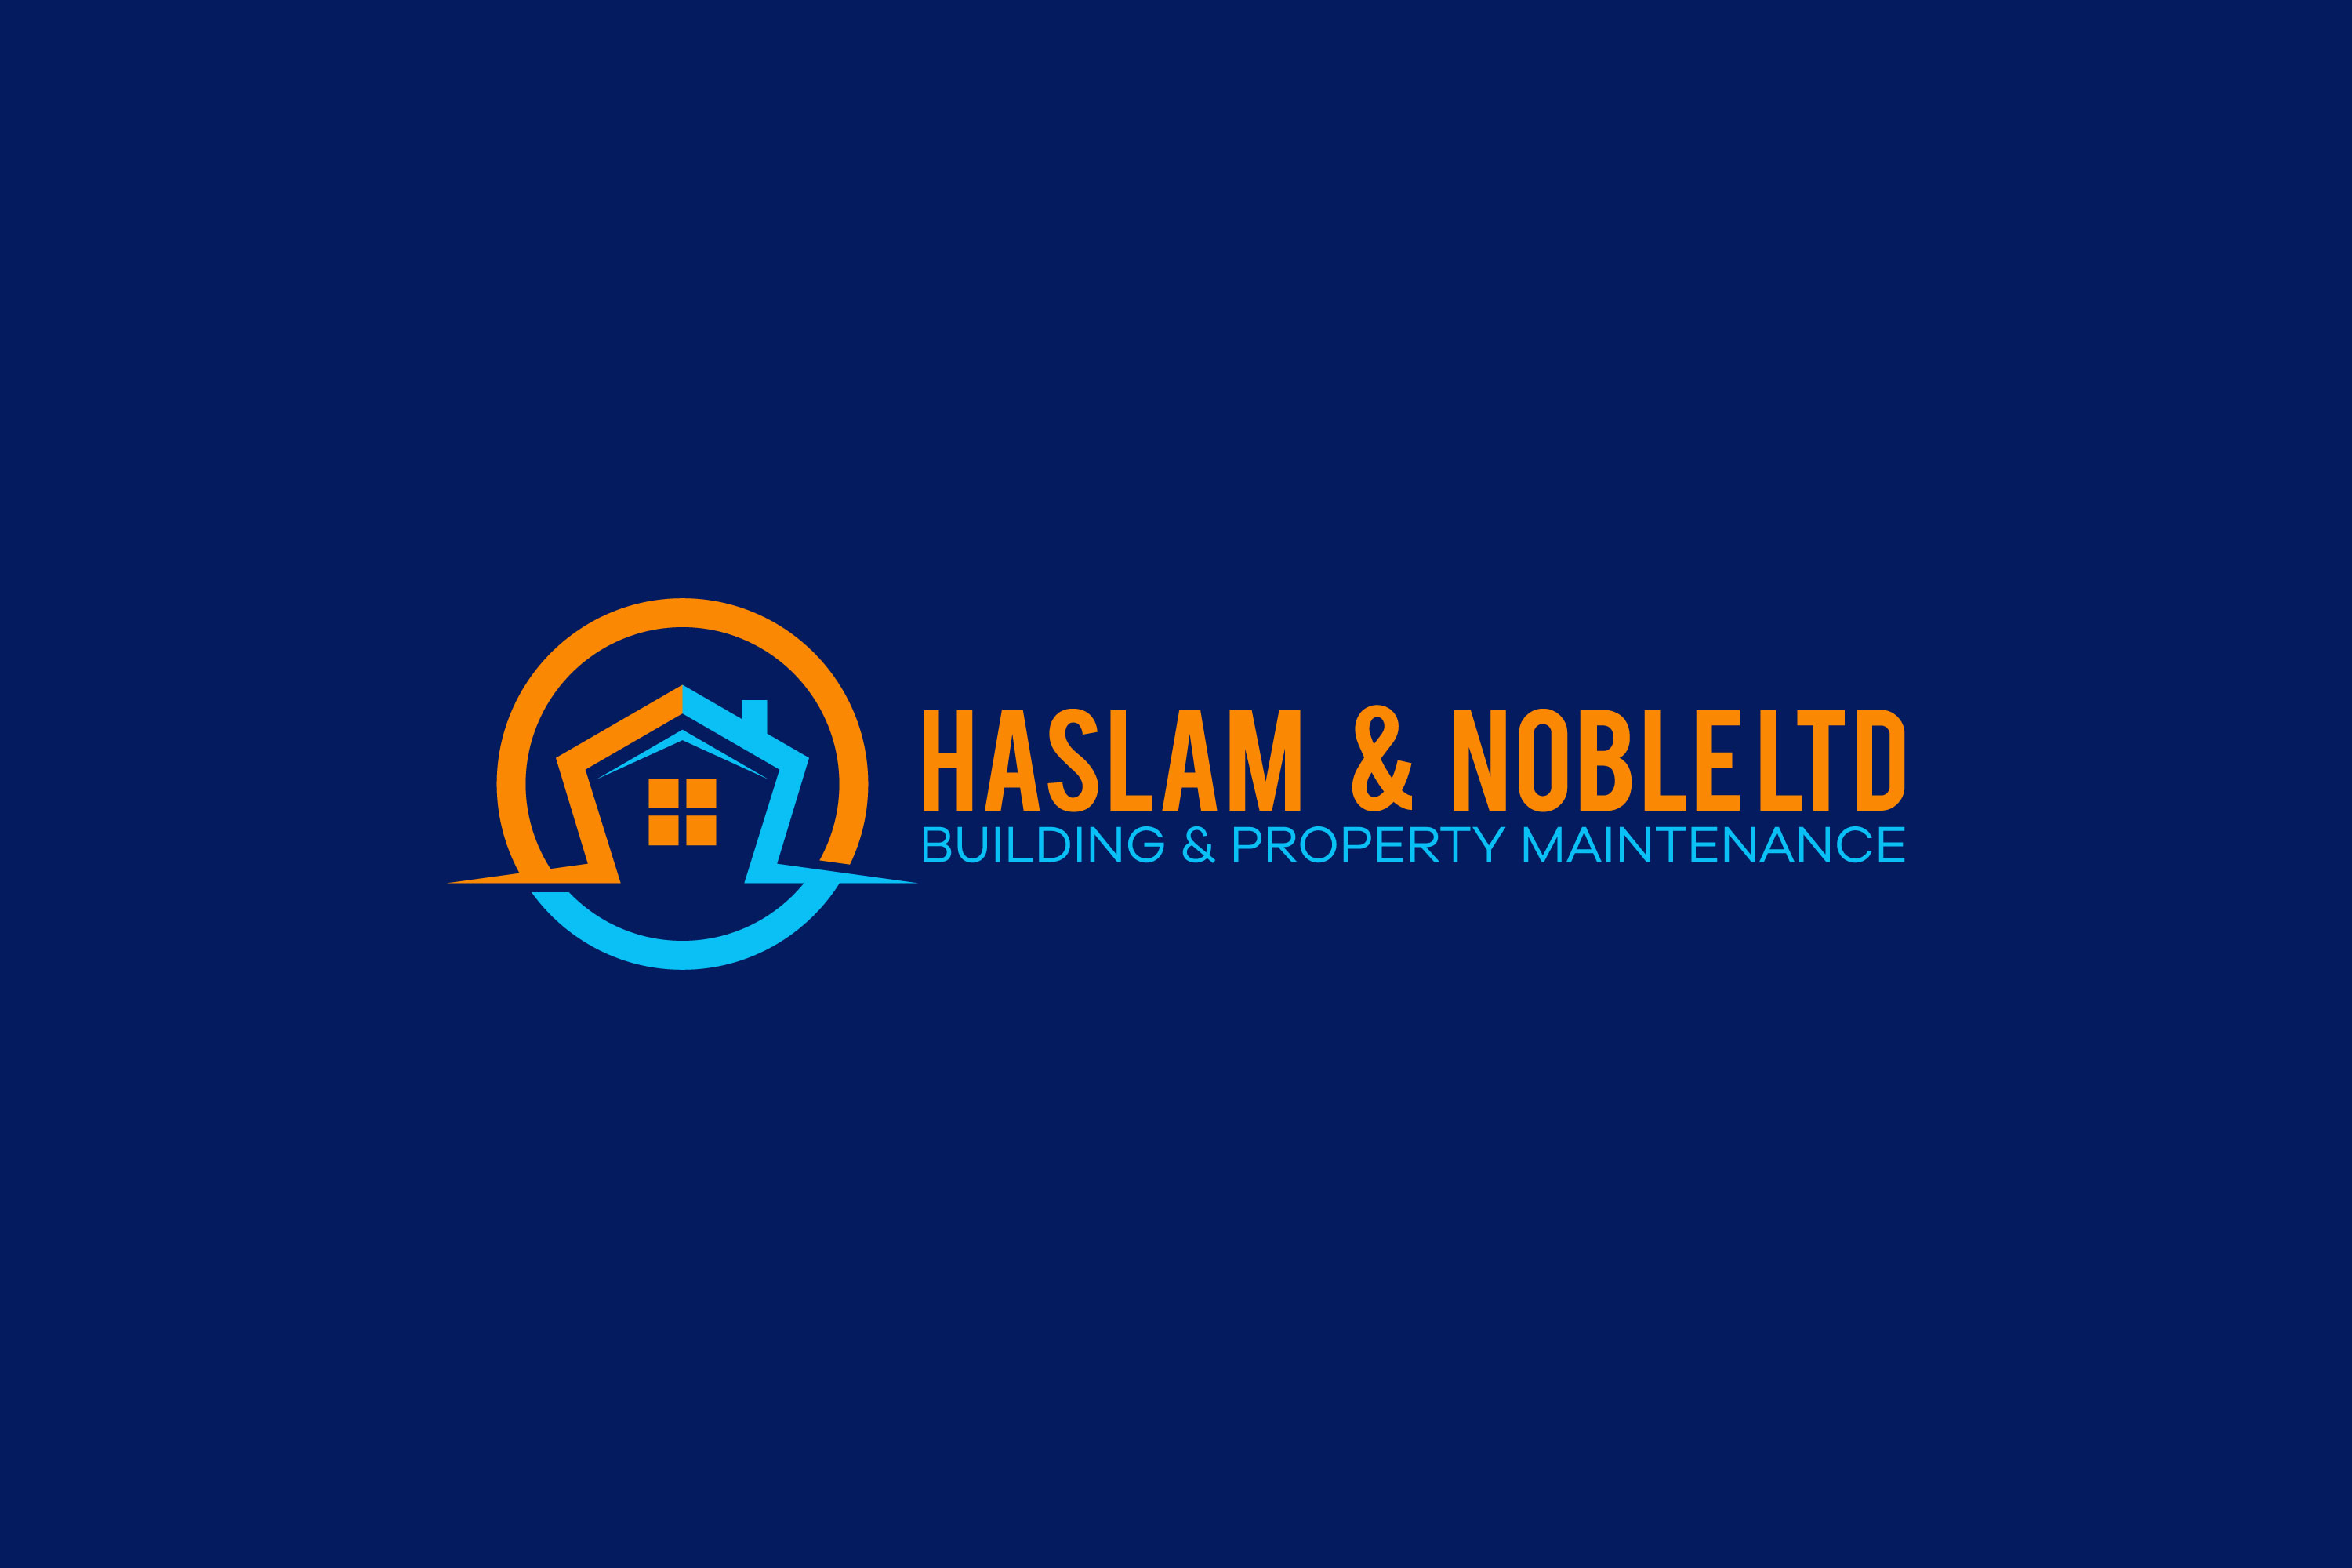 logo for Haslam & Noble ltd